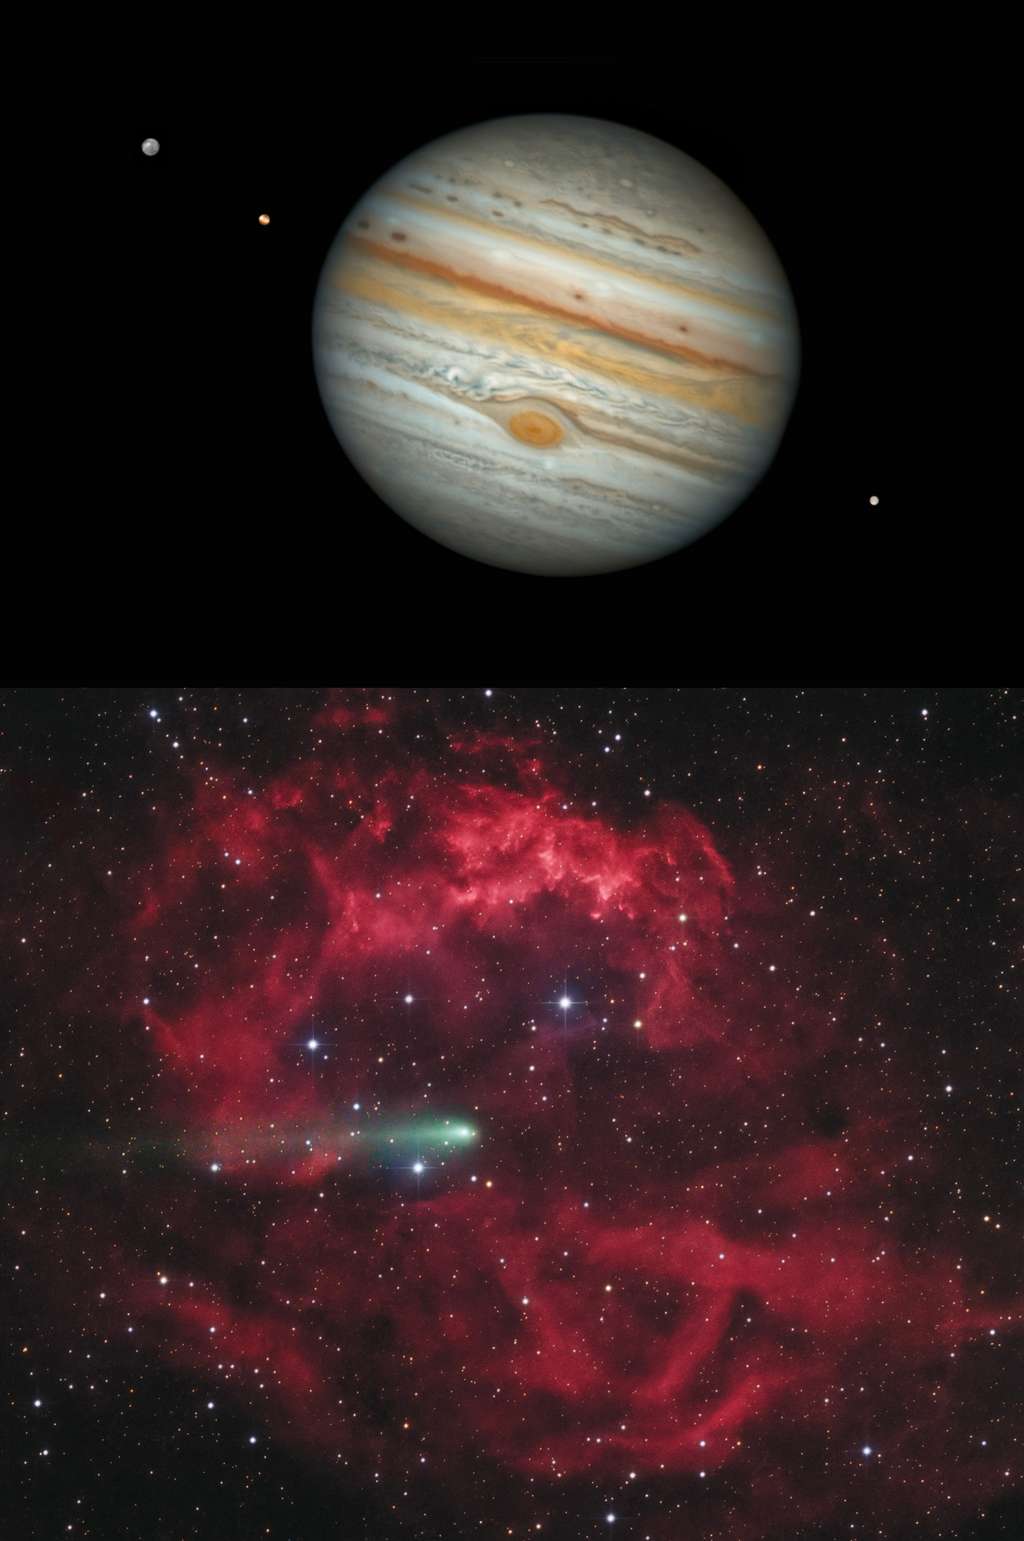 Dans la rubrique « Planètes, comètes et astéroïdes », les photos de la comète Léonard, de la planète Jupiter et de la comète Comet 4P/Faye ont été primées. Cette image de Jupiter a été acquise par Damian Peach, depuis l’observatoire El Sauce, au Chili. La célèbre Grande Tache rouge est clairement visible ainsi, que trois satellites Jovian. La deuxième photo primée est celle de Lionel Majzik. Elle montre la comète 4P/Faye qui semble fendre la nébuleuse Sh2-261 dans la constellation d’Orion.